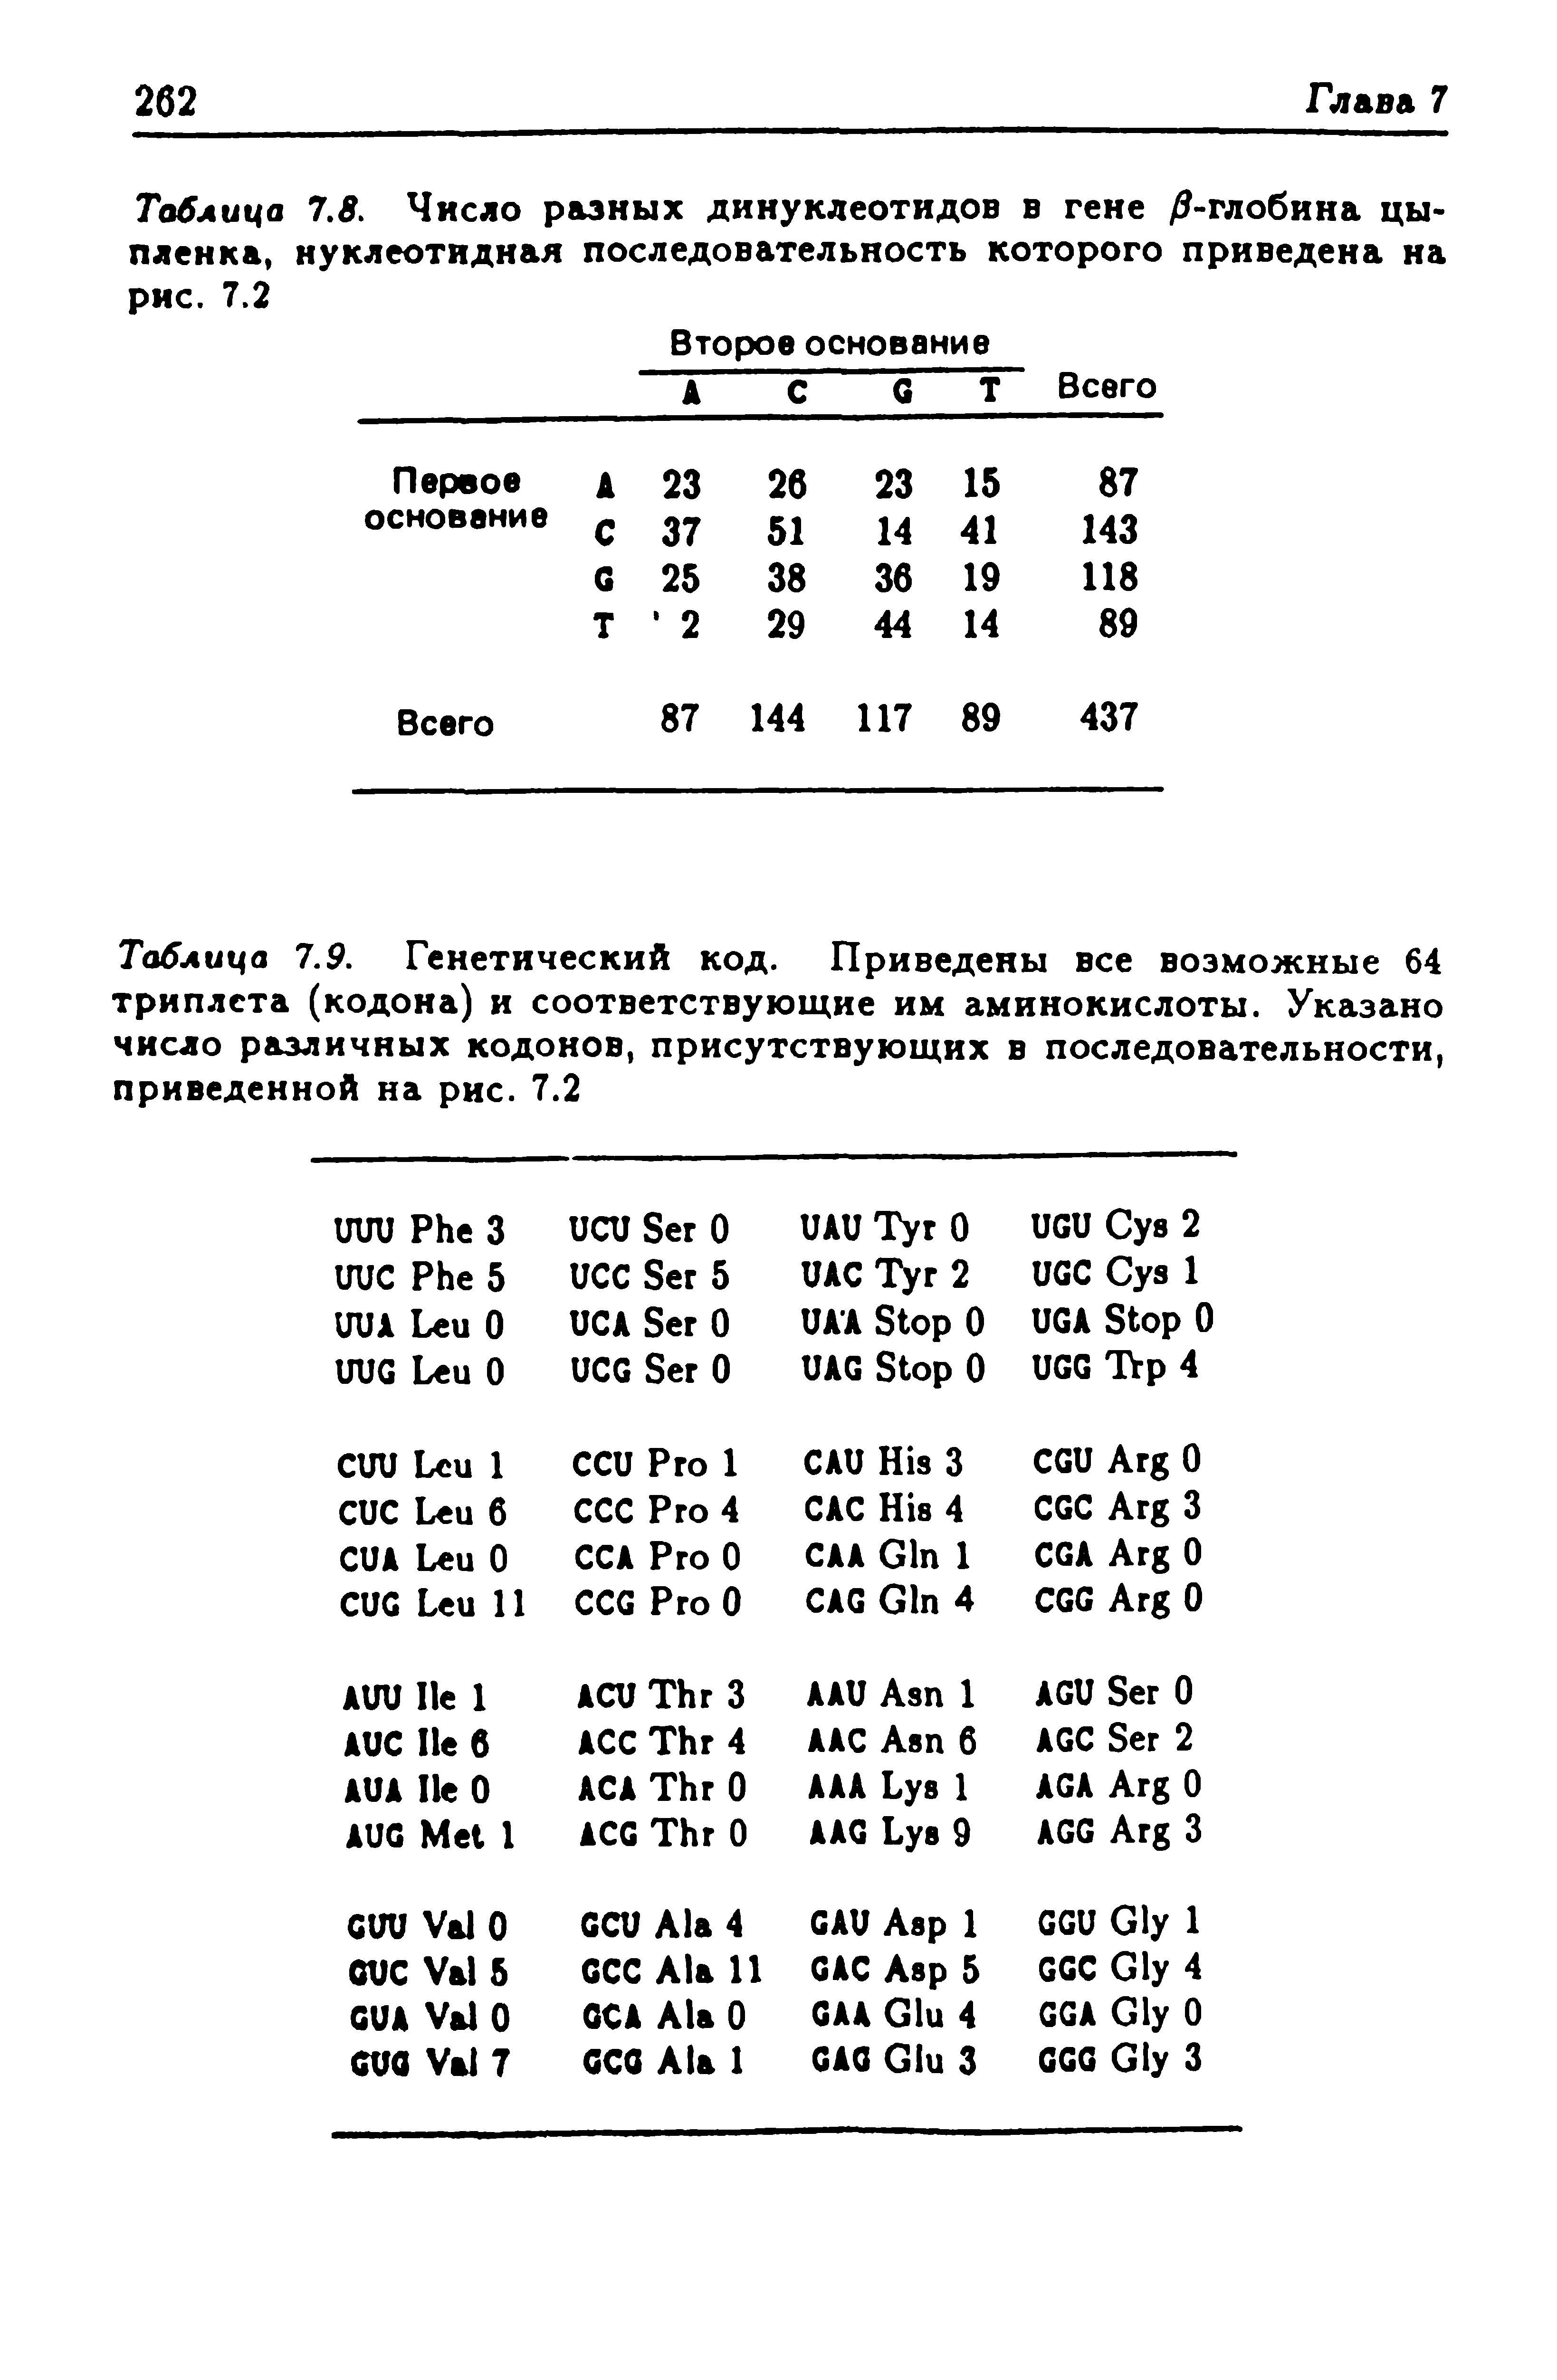 Таблица Т.9. Генетический код. Приведены все возможные 64 триплета (кодона) и соответствующие им аминокислоты. Указано число различных кодонов, присутствующих в последовательности, приведенной на рис. 7.2...